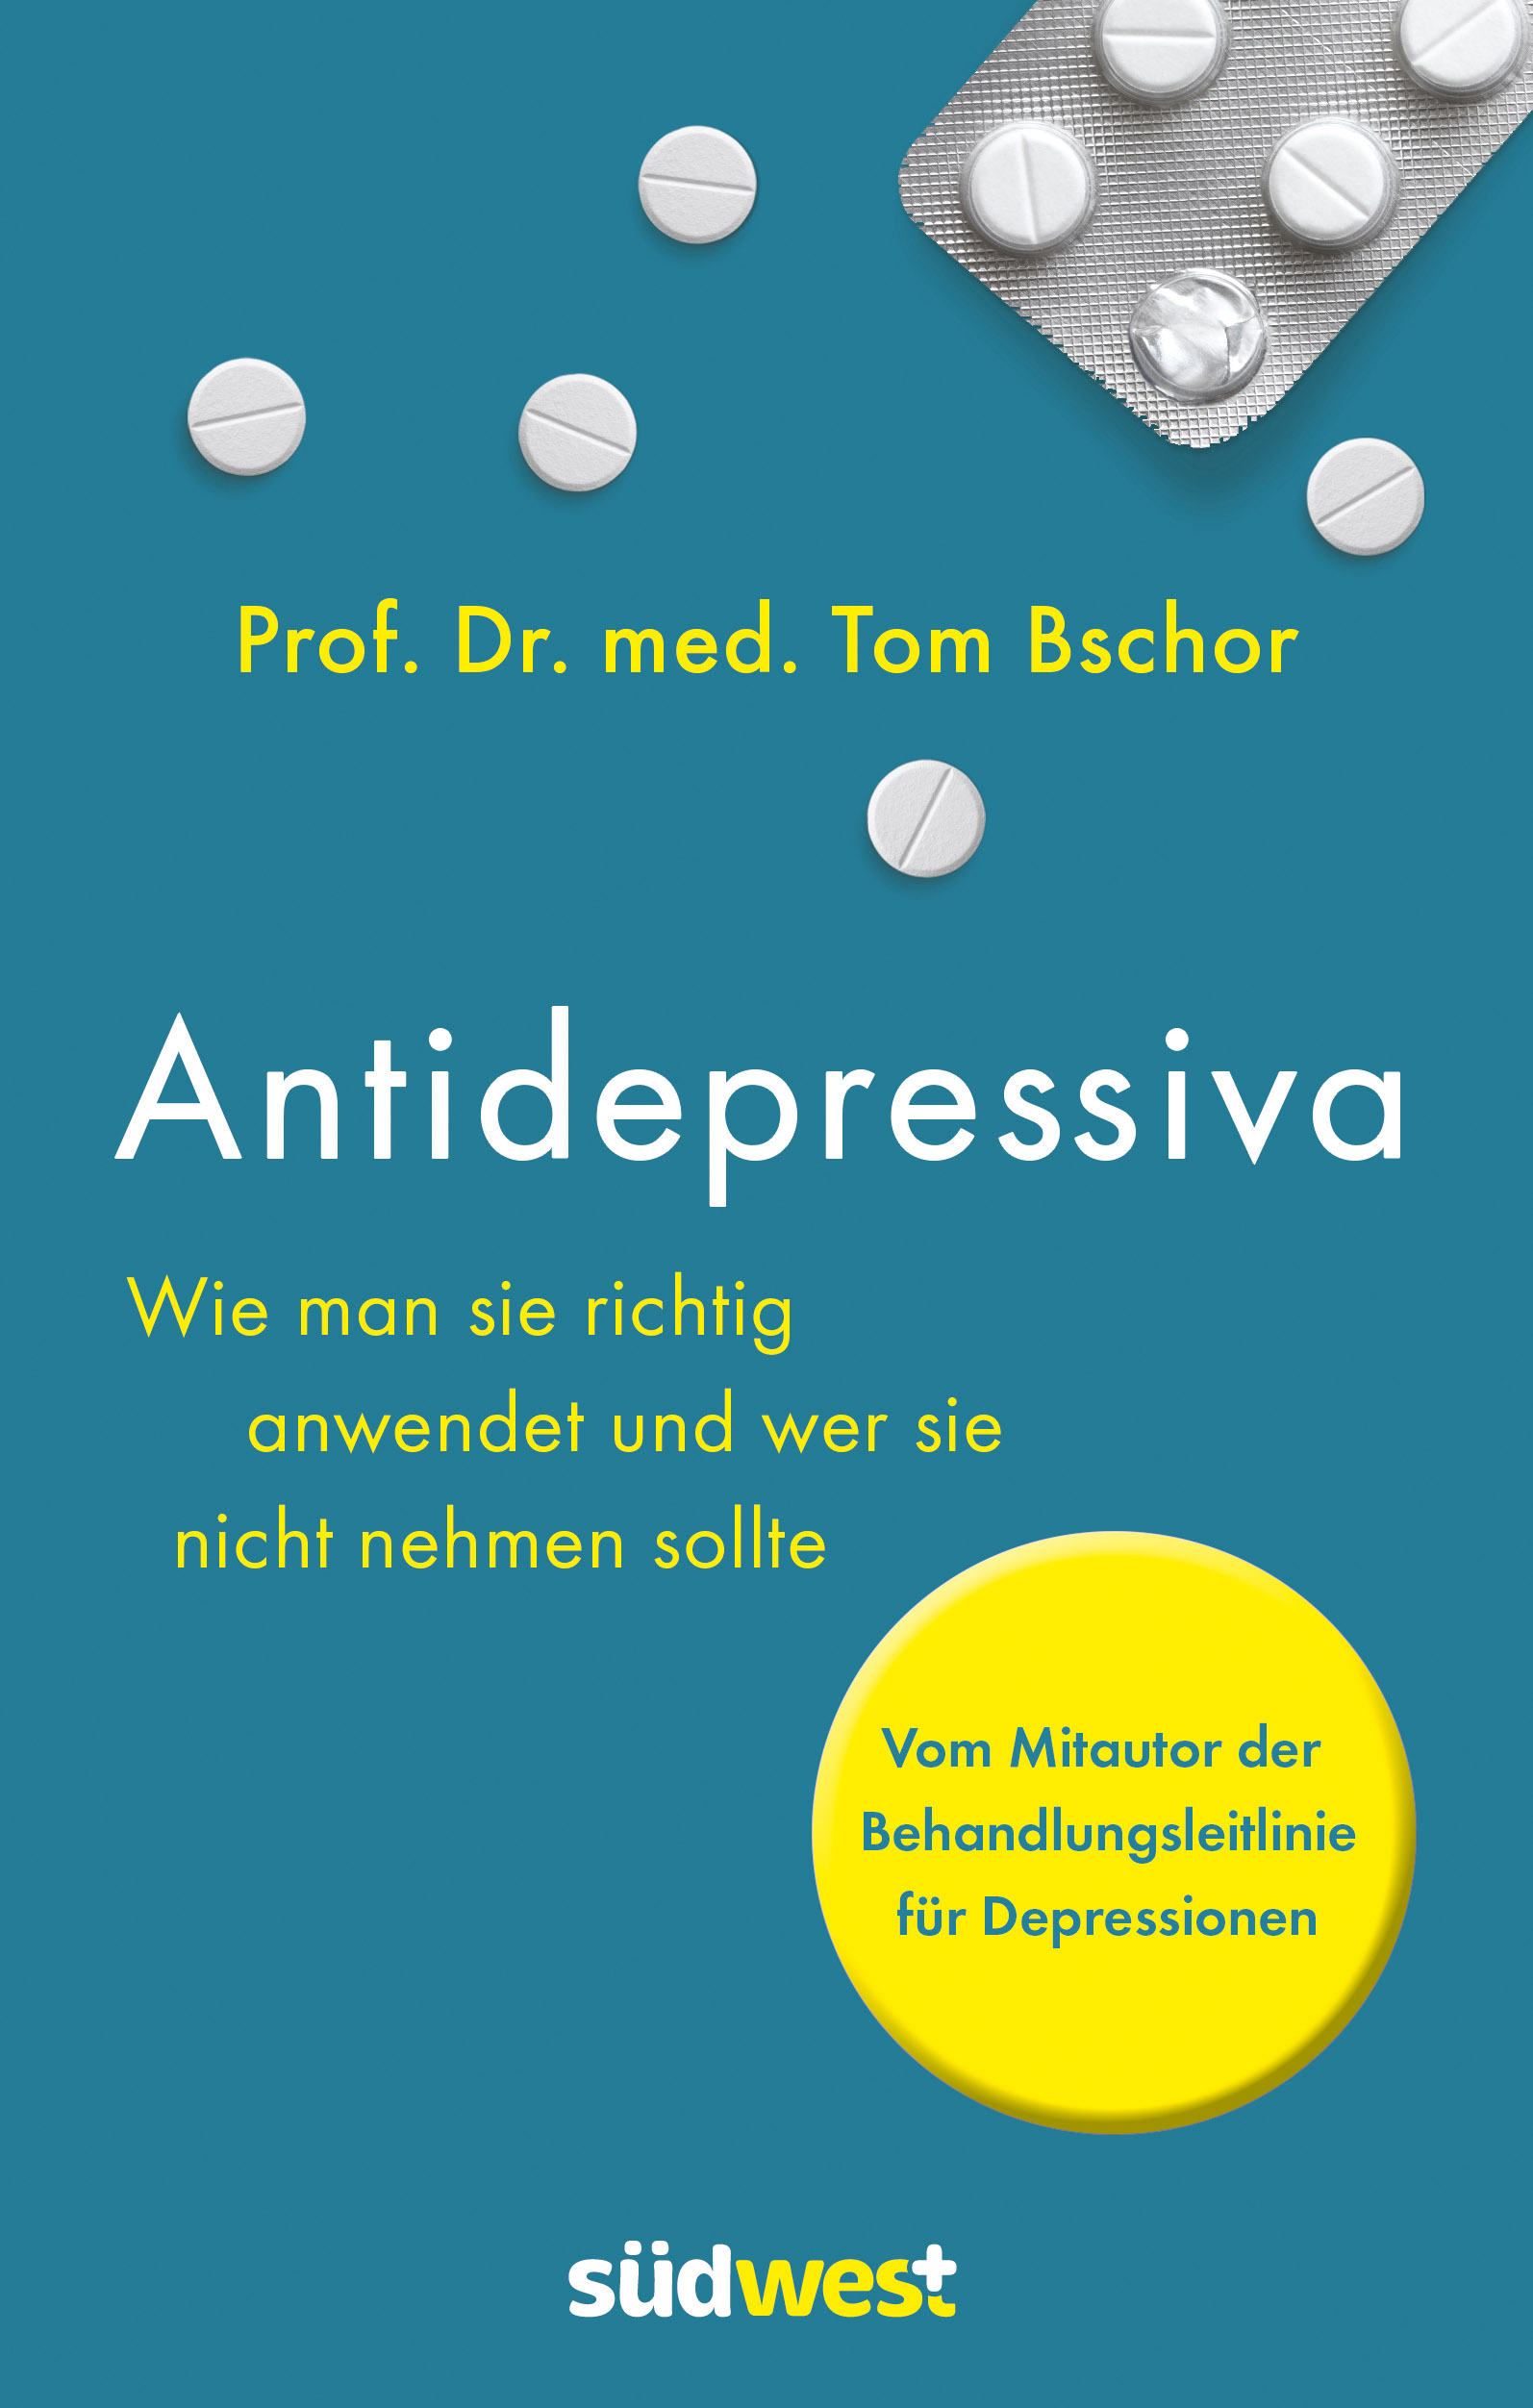 Tom Bschor (2018) Antidepressiva. München: Südwest-Verlag, 224 S., 20,00 €, eBook 15,99 €